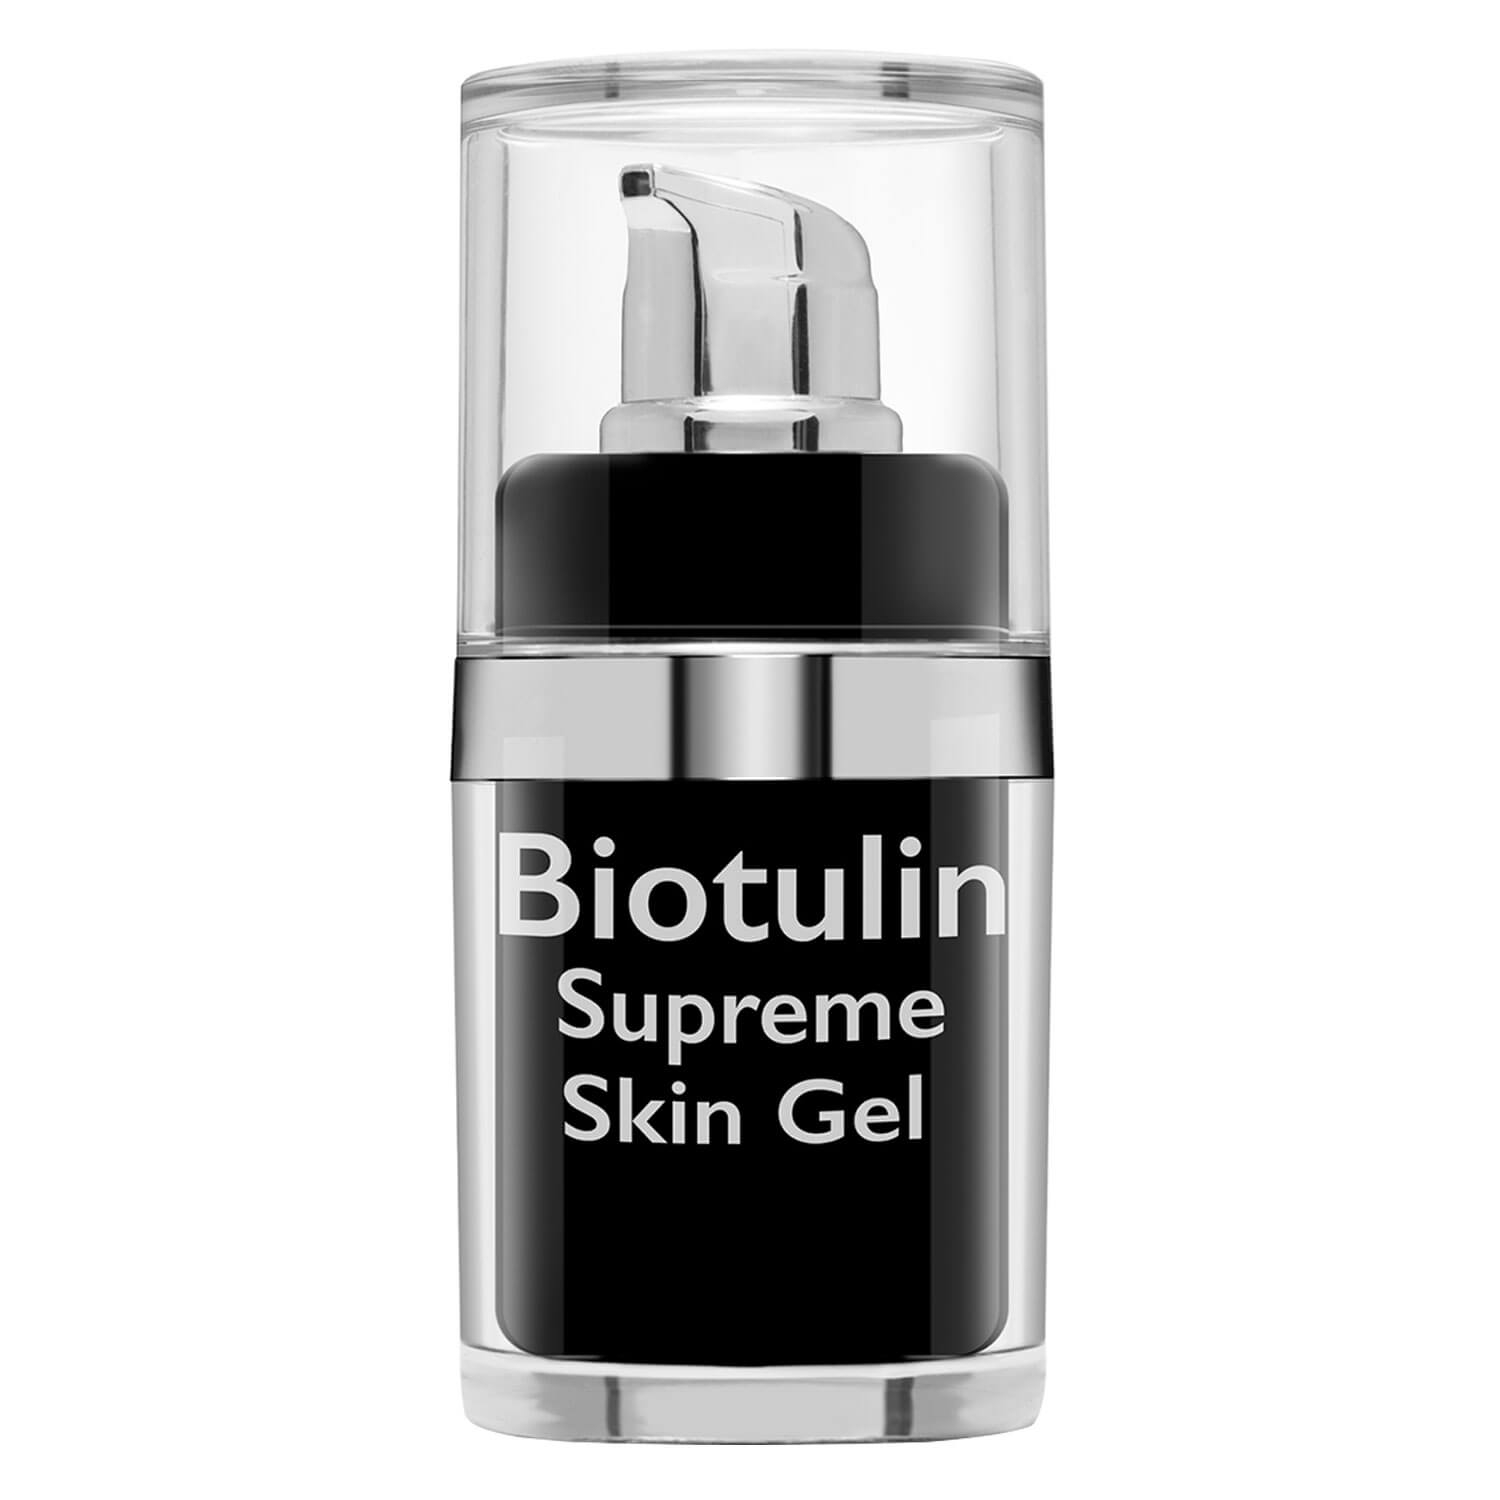 Produktbild von Biotulin - Biotulin Supreme Skin Gel